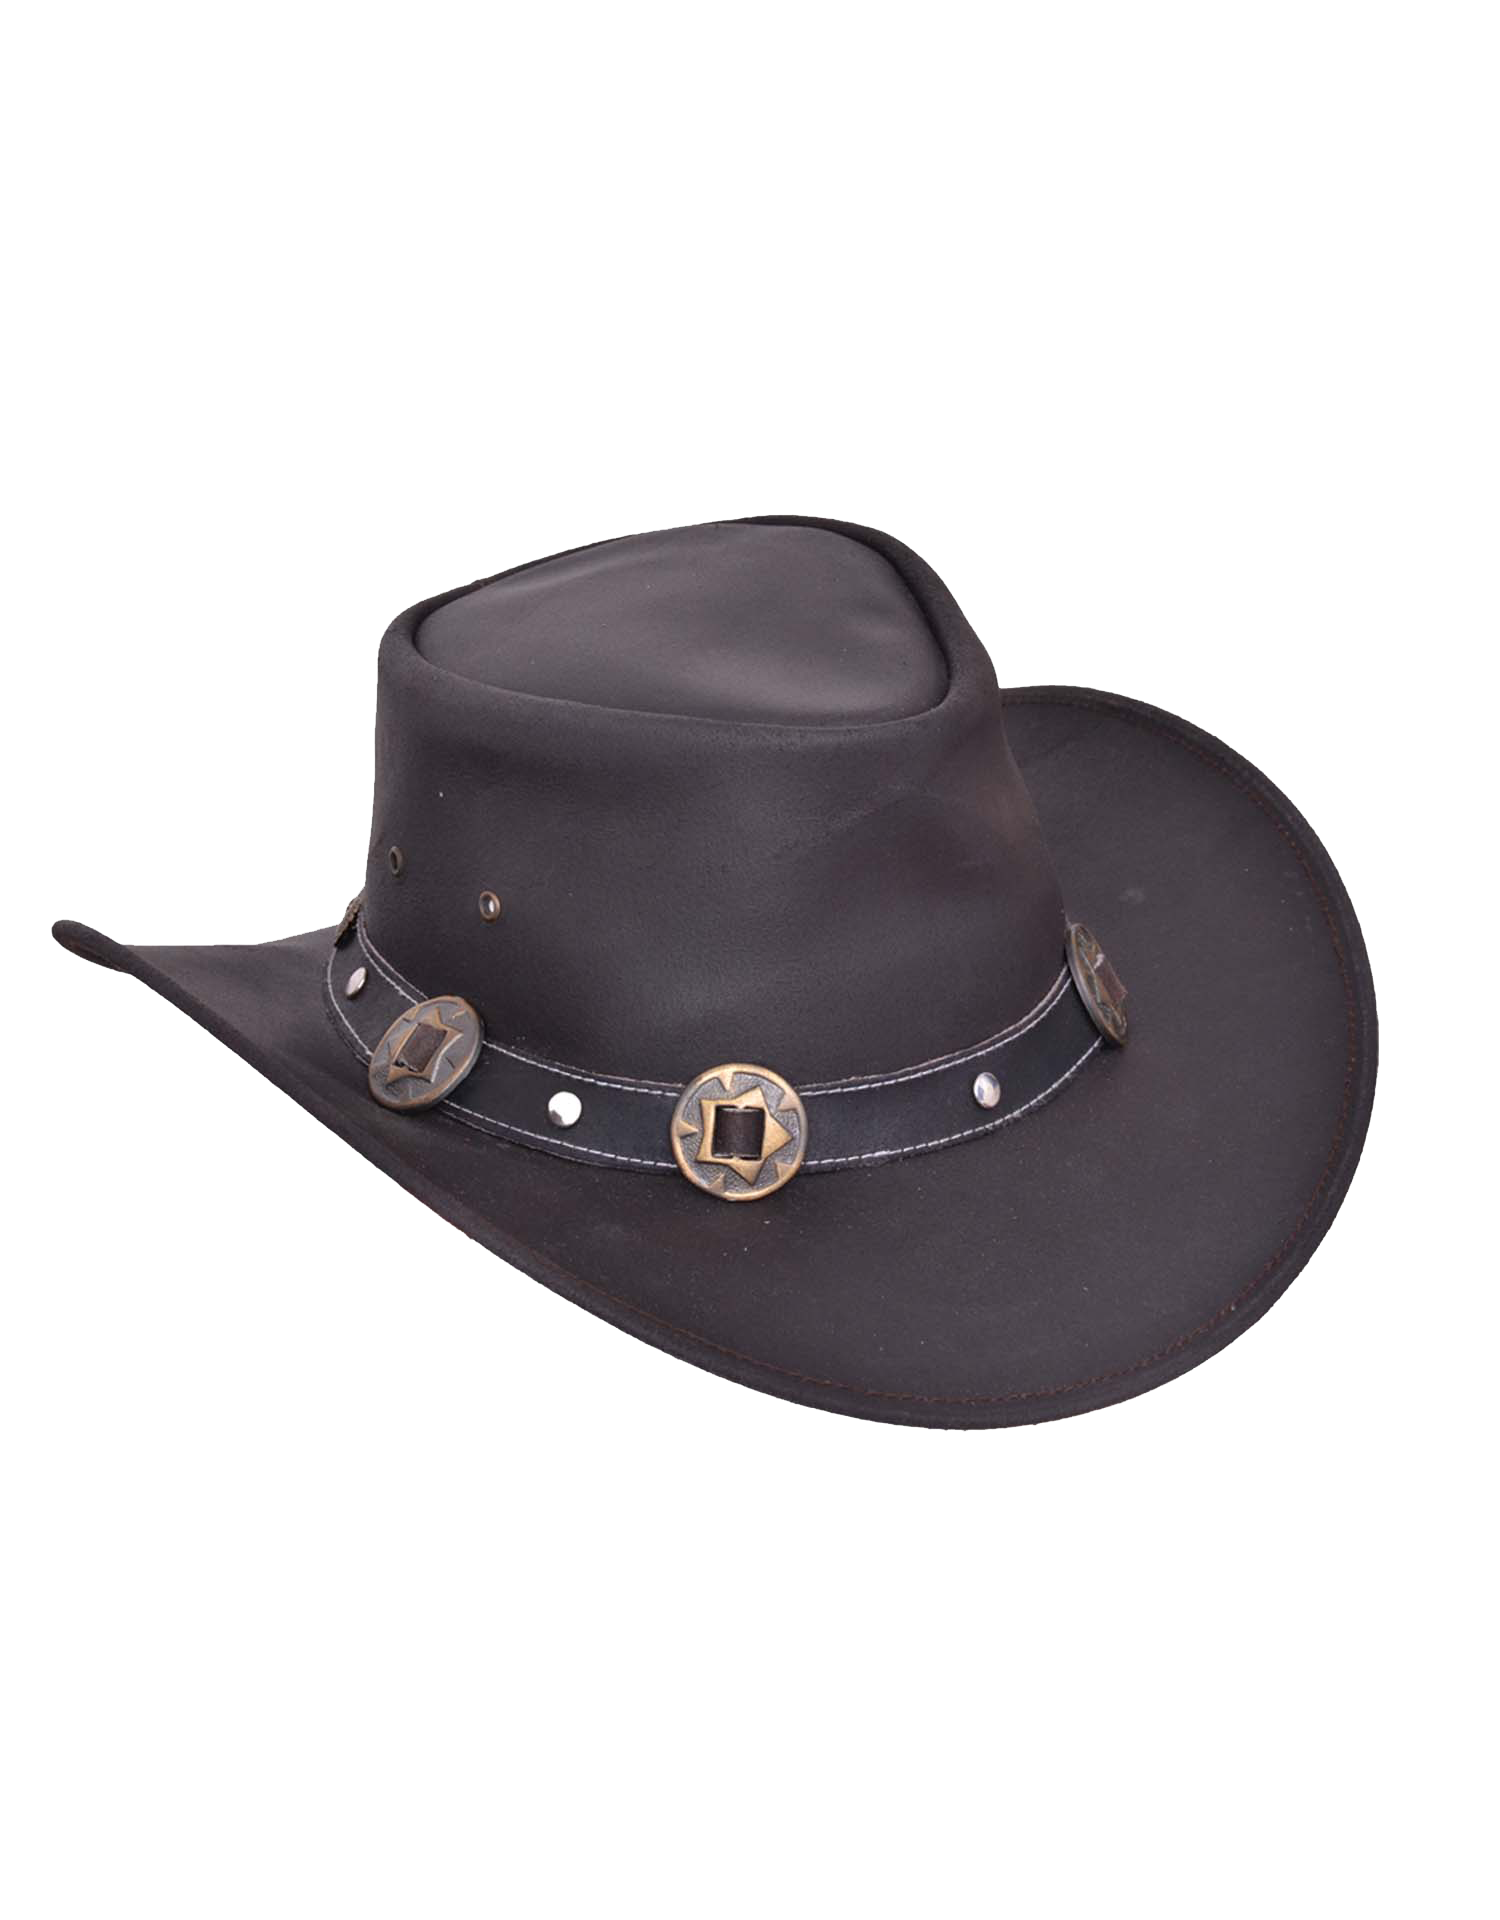 Black Leather Outback Hat - Men's - Premium - 9211.00-UN